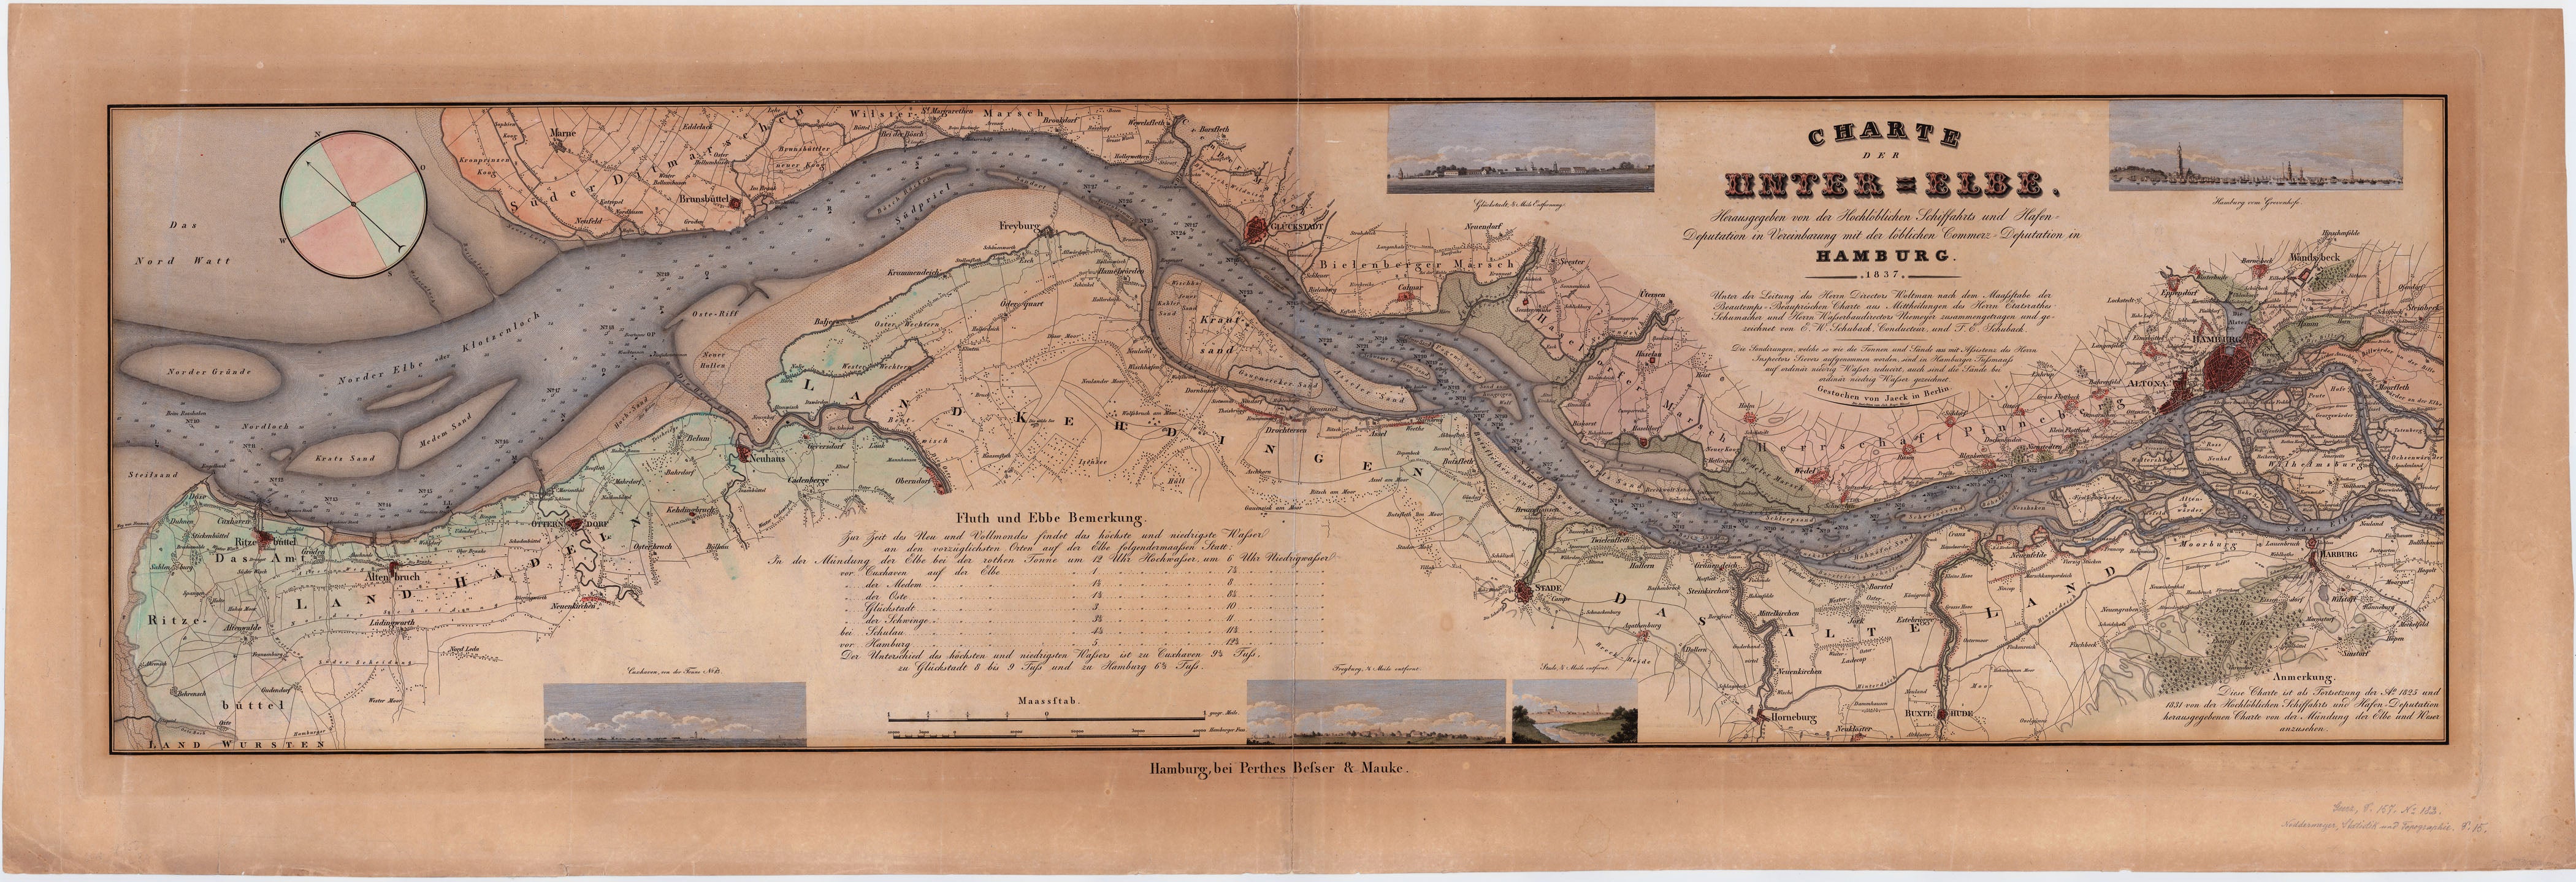 Hamburg und die Elbe im Jahr 1837 von Perthes, Besser & Mauke